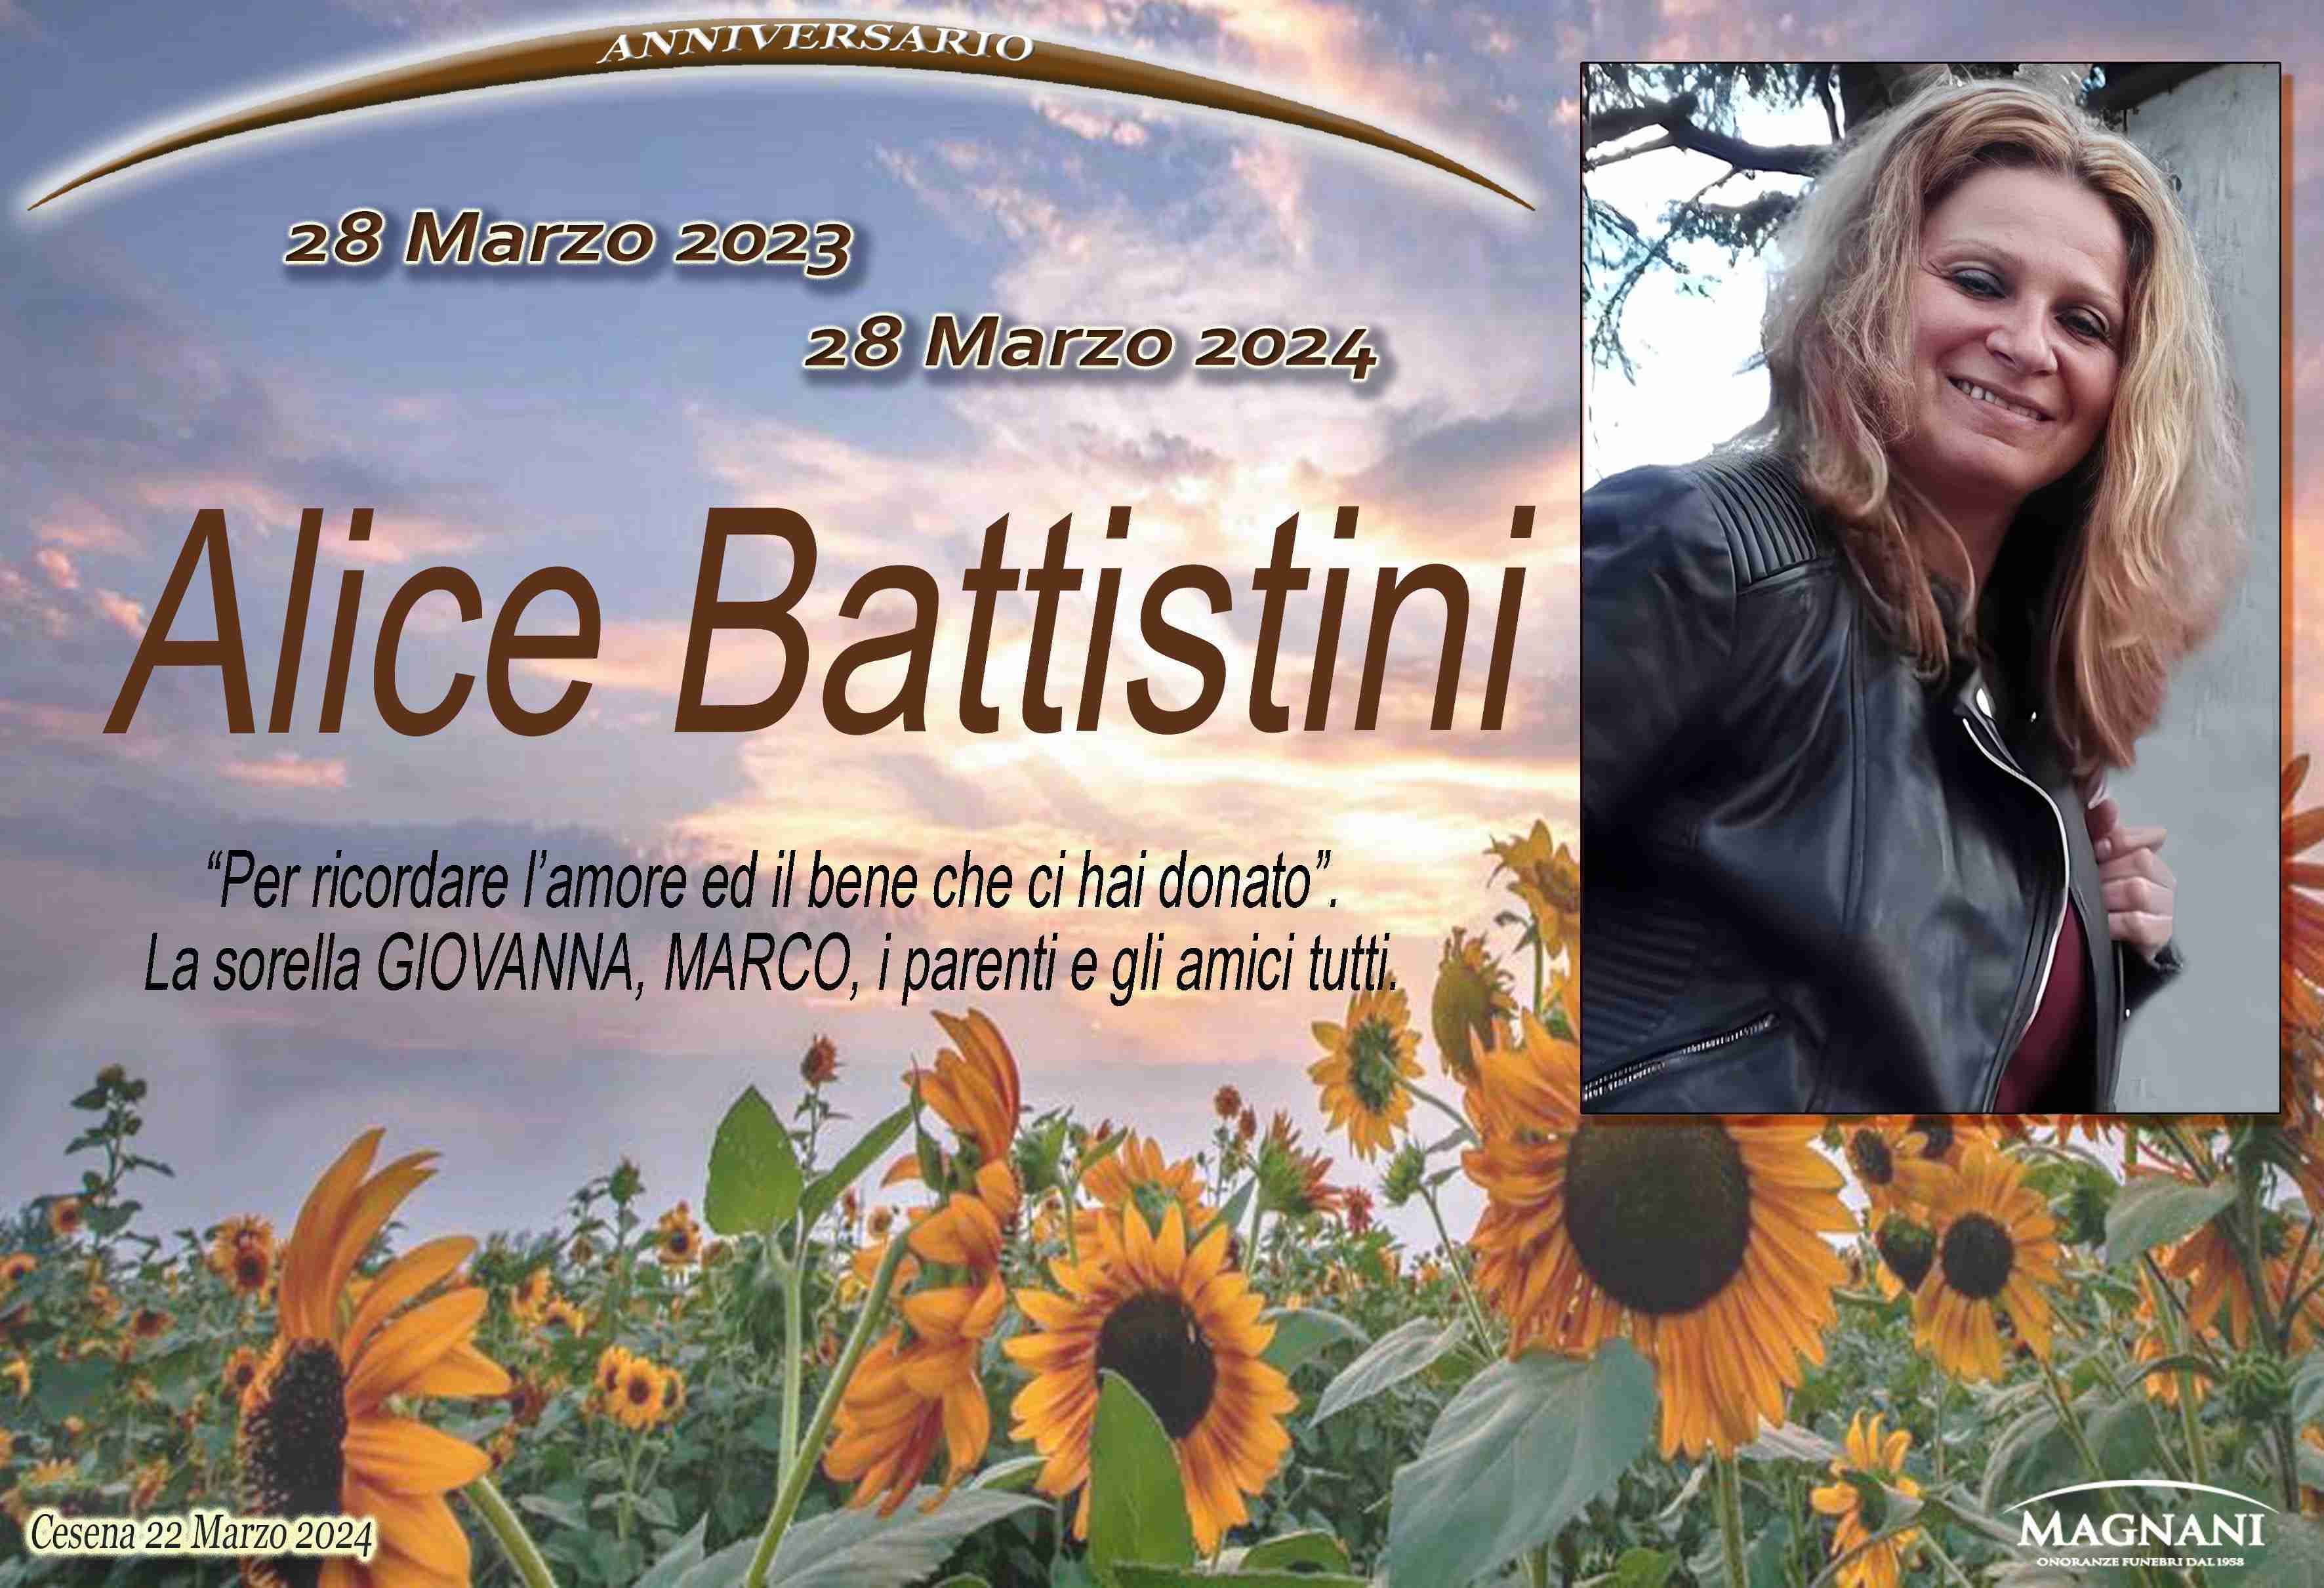 Alice Battistini